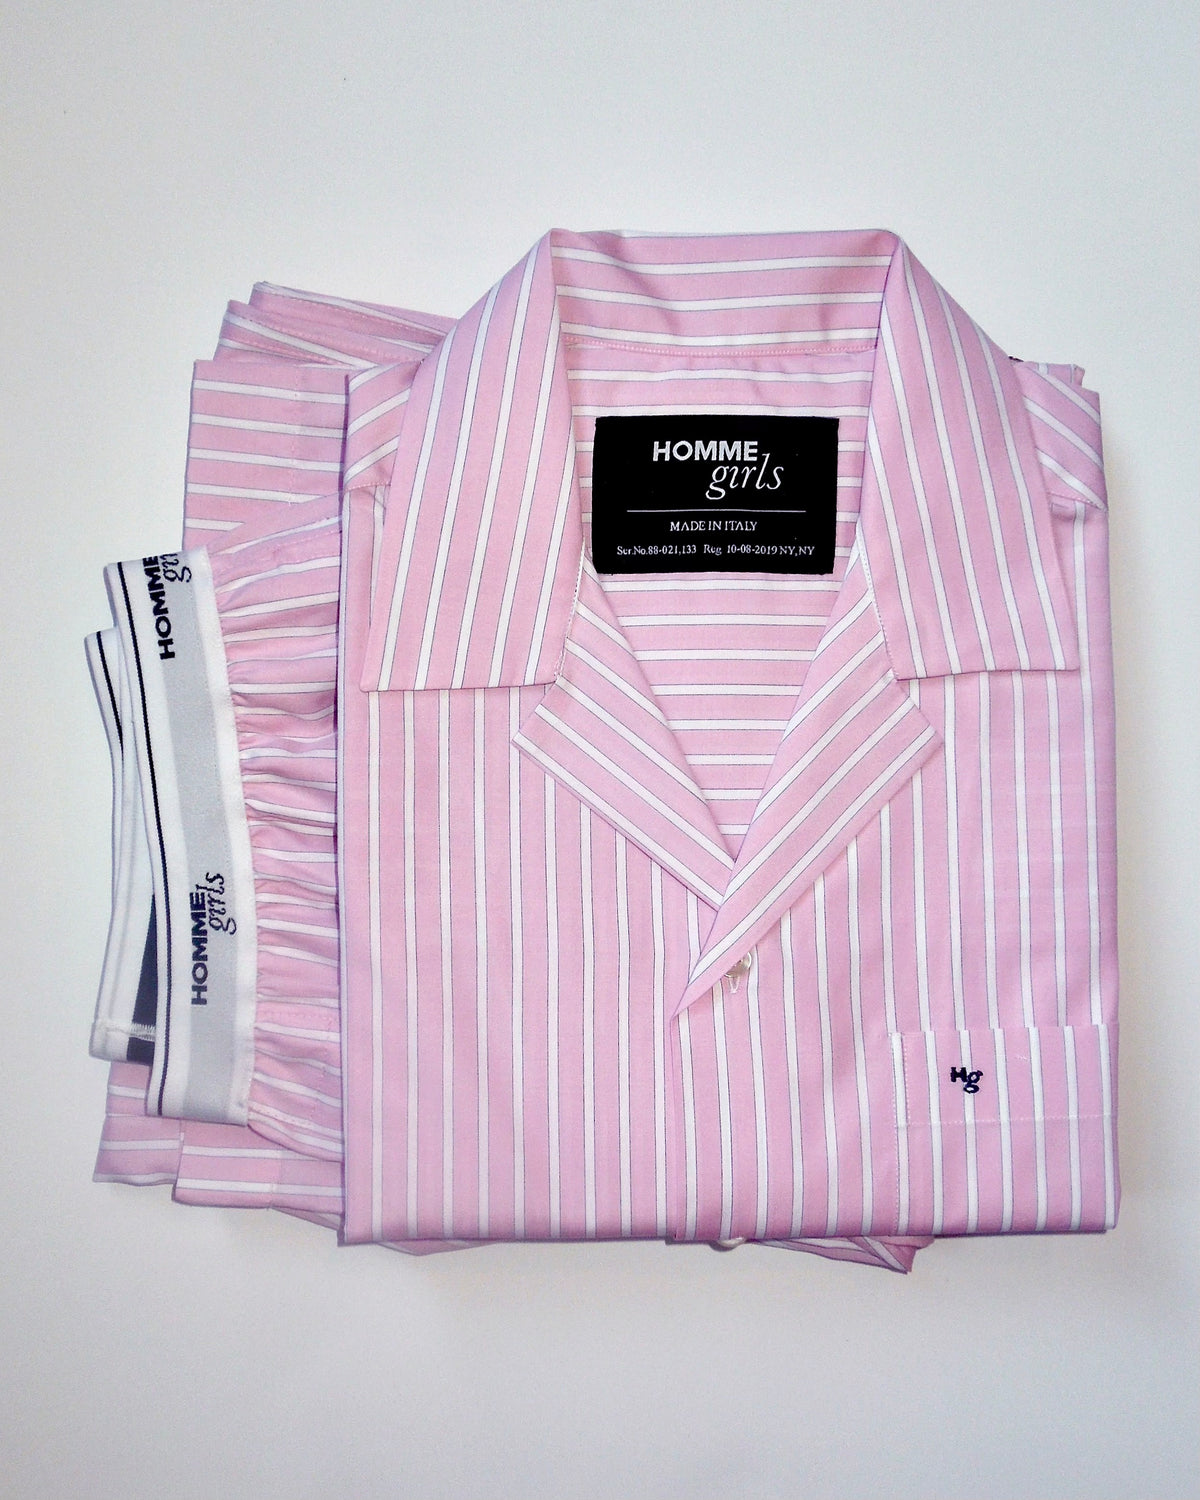 Pajama Set in Pink Stripe